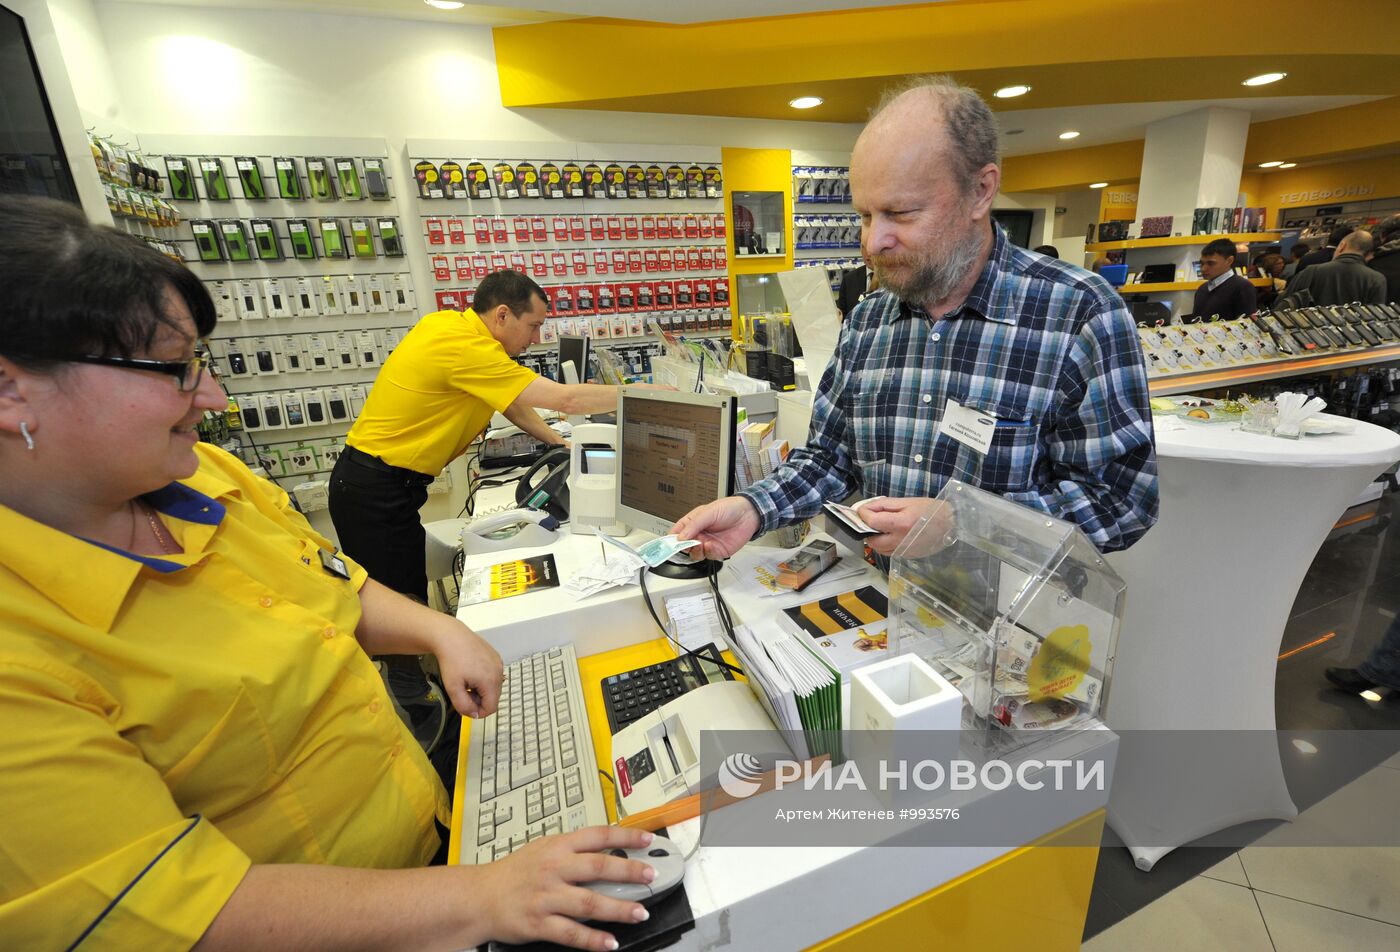 Начало продаж в России нового Windows-смартфона Omnia W Samsung